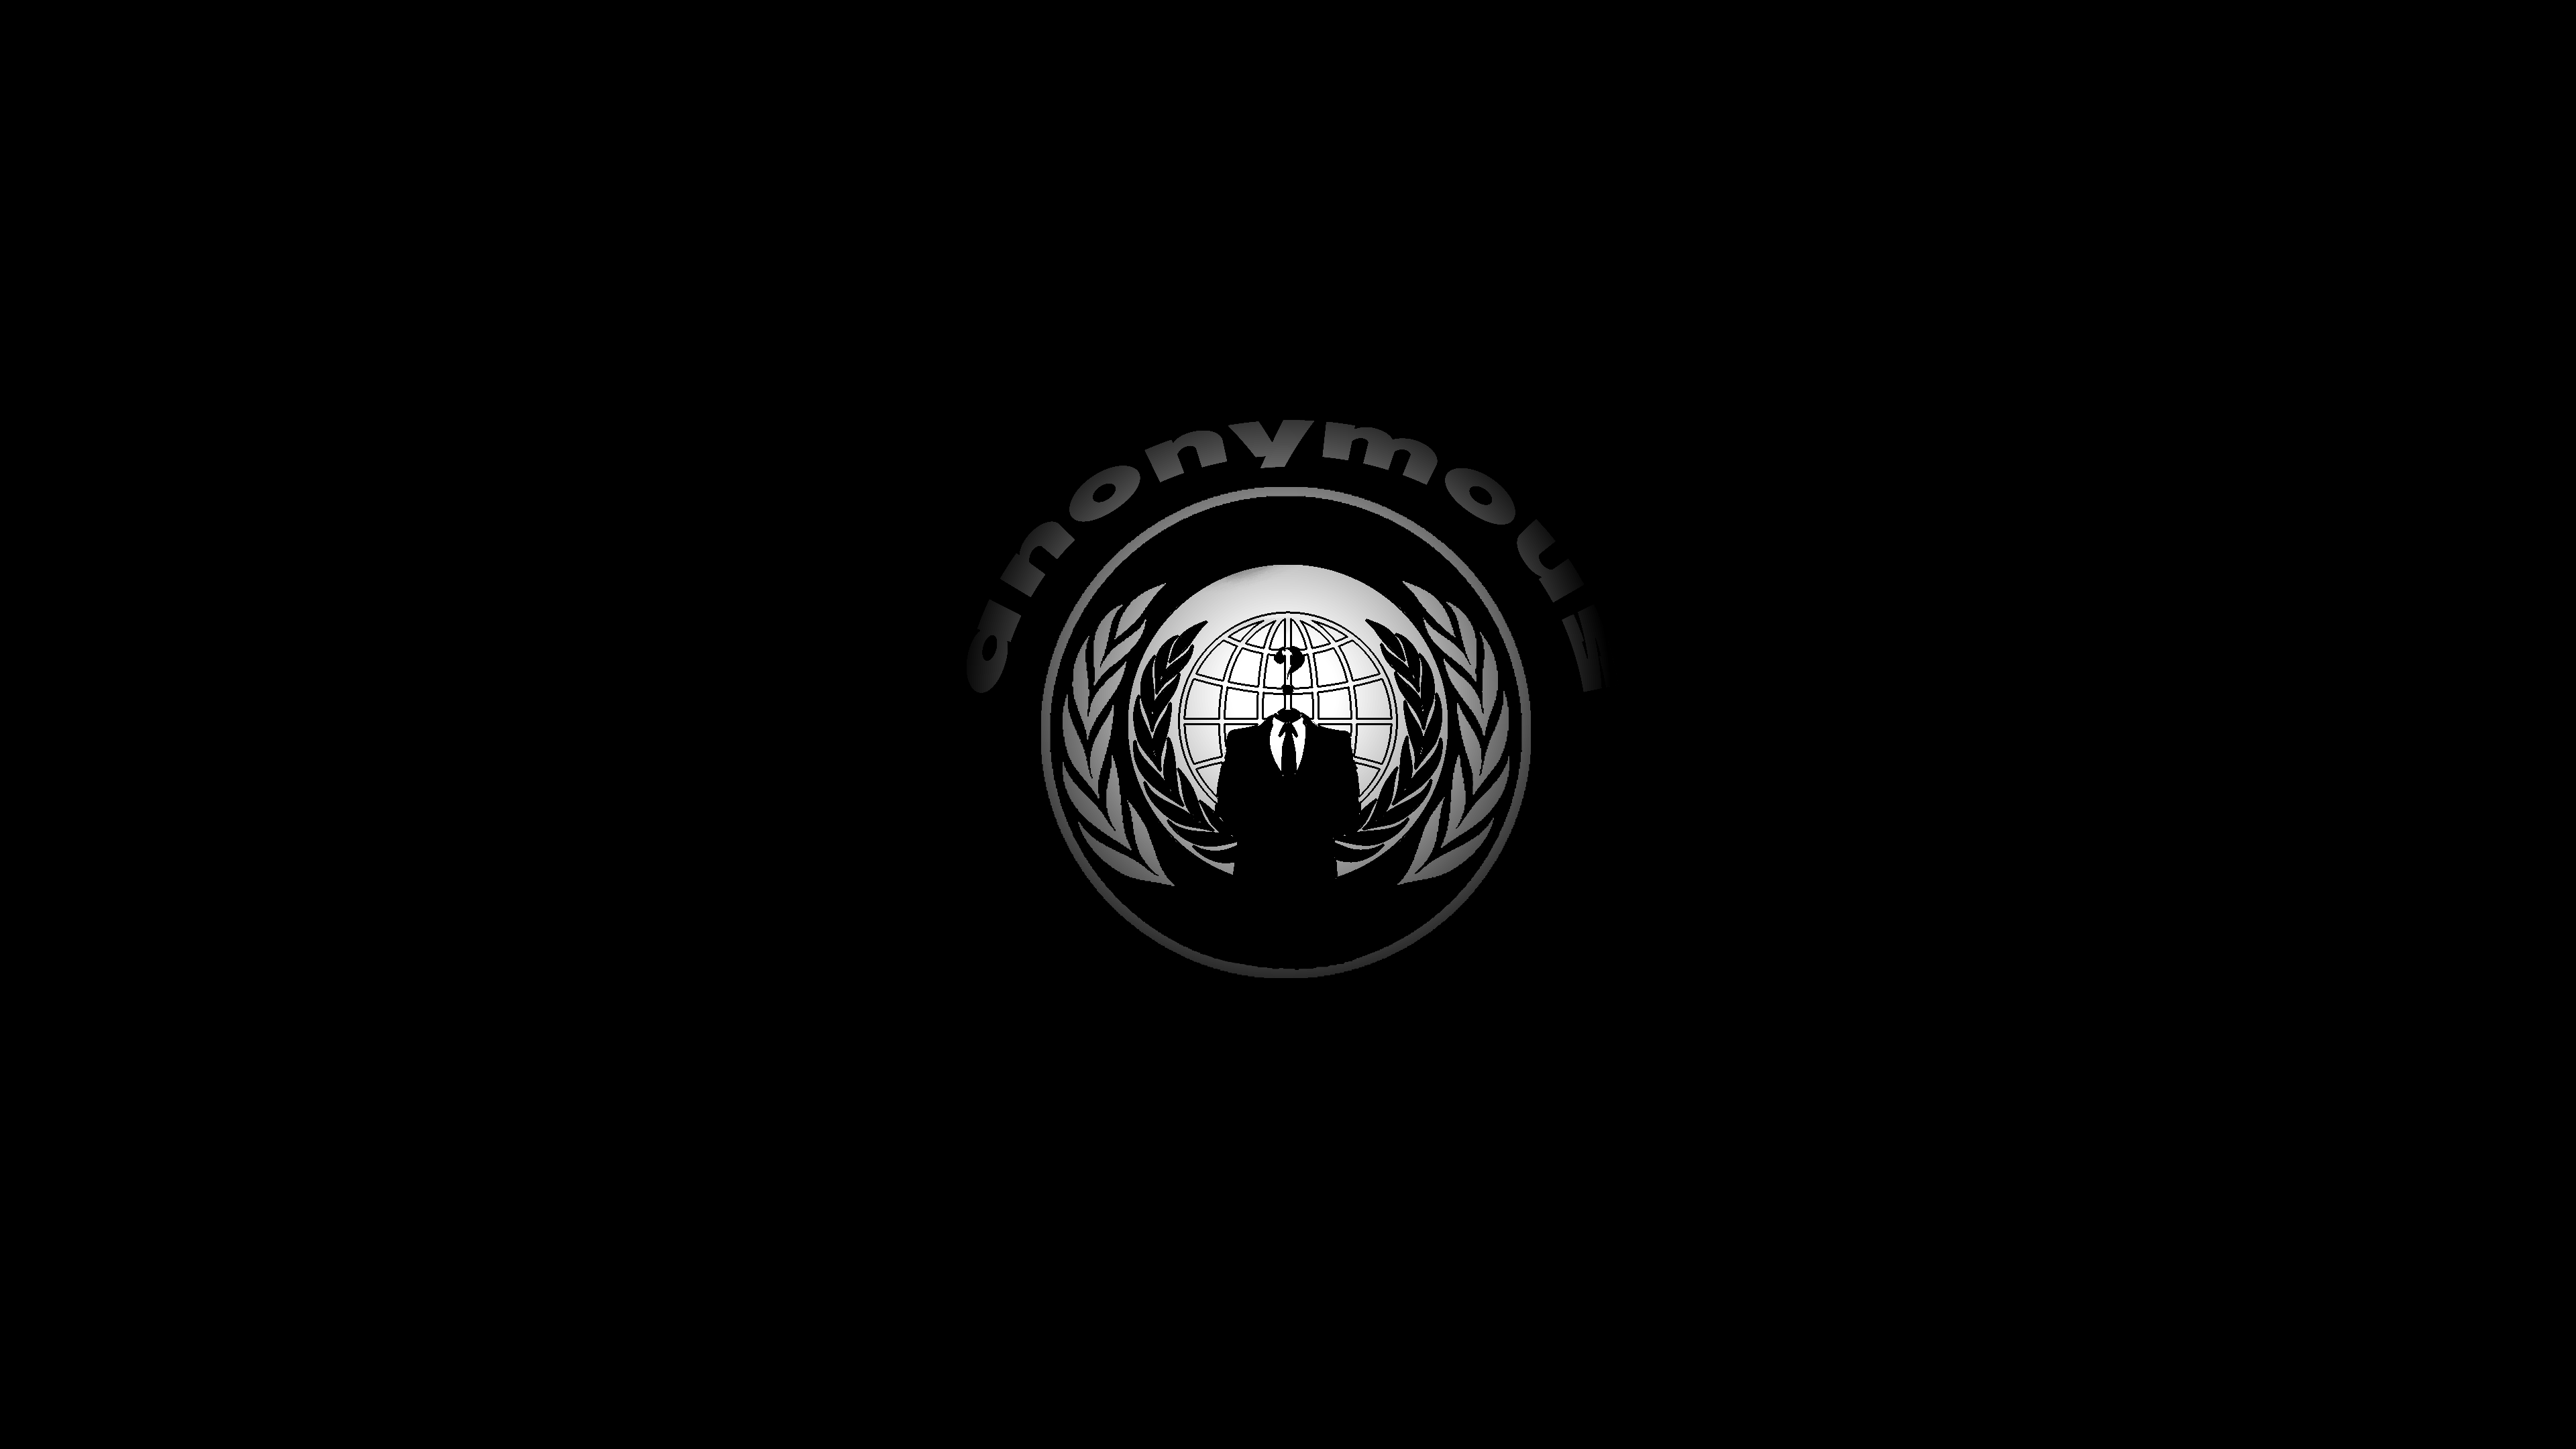 Anonymous Logo Wallpaper - WallpaperSafari